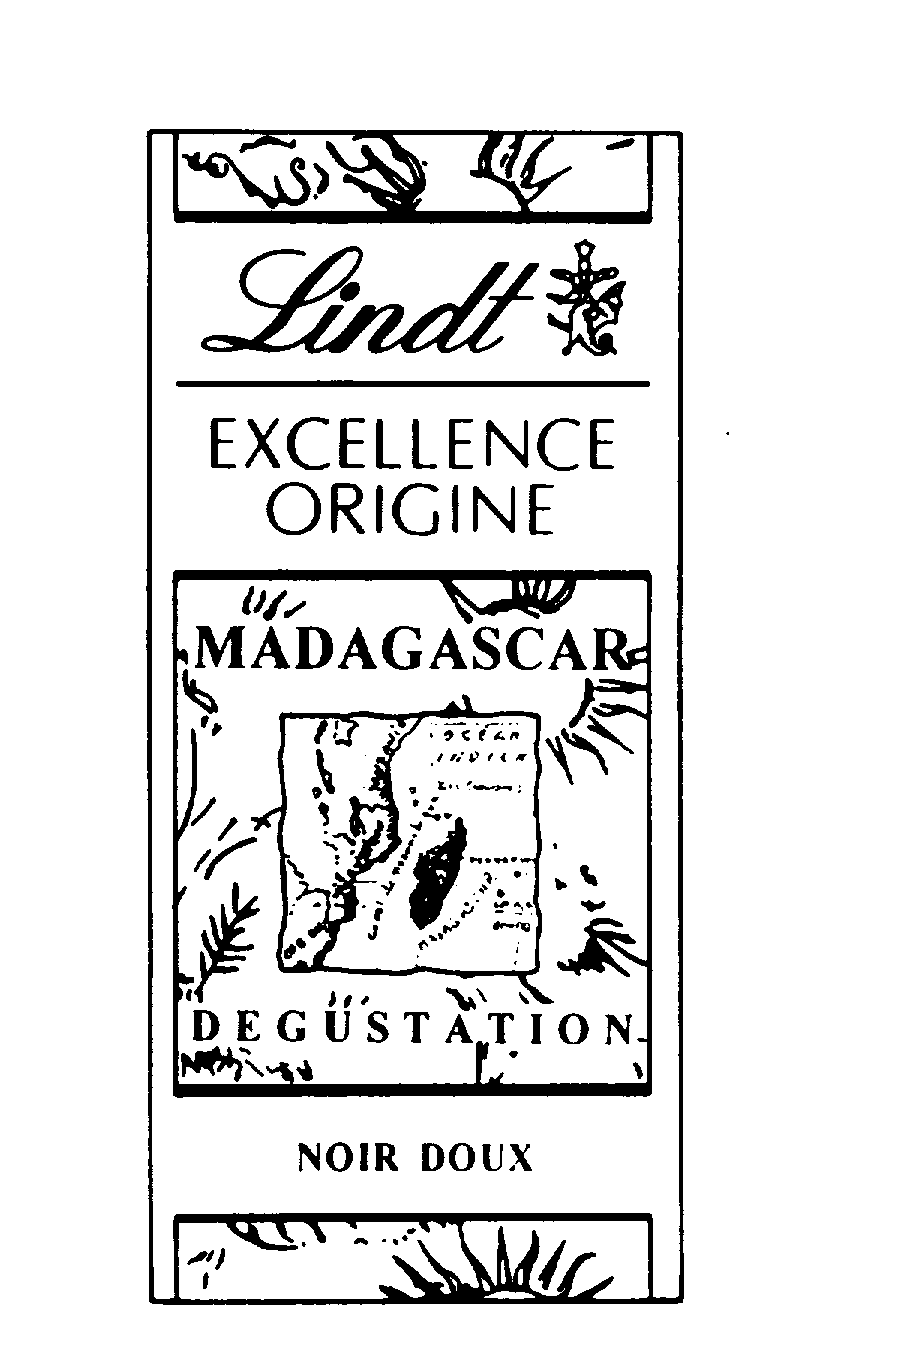  LINDT EXCELLENCE ORIGINE MADAGASCAR DEGUSTATION NOIR DOUX